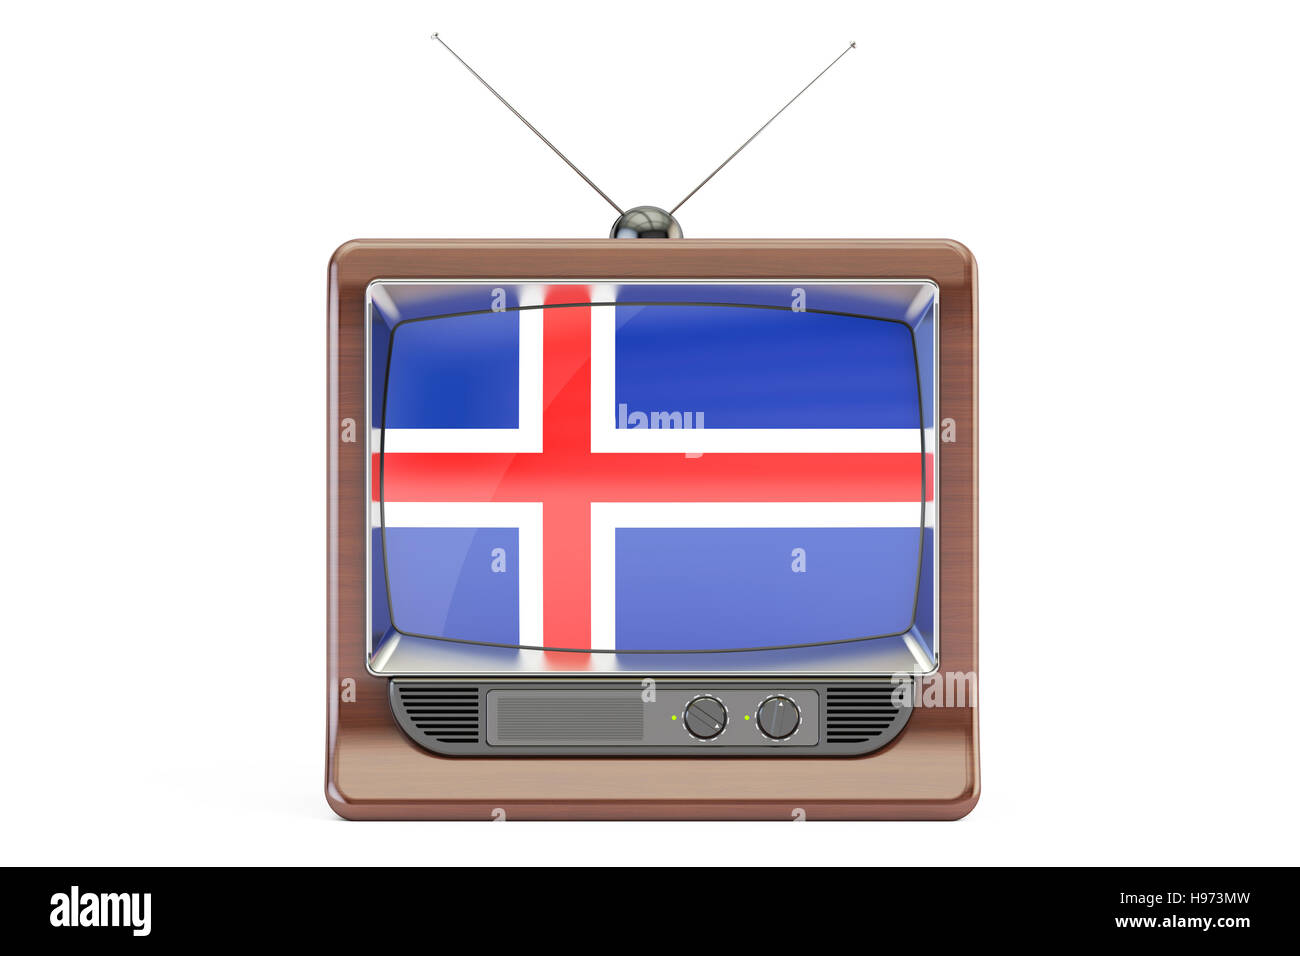 Il vecchio televisore con bandiera di Islanda. Icelandic Television concetto, 3D rendering isolati su sfondo bianco Foto Stock